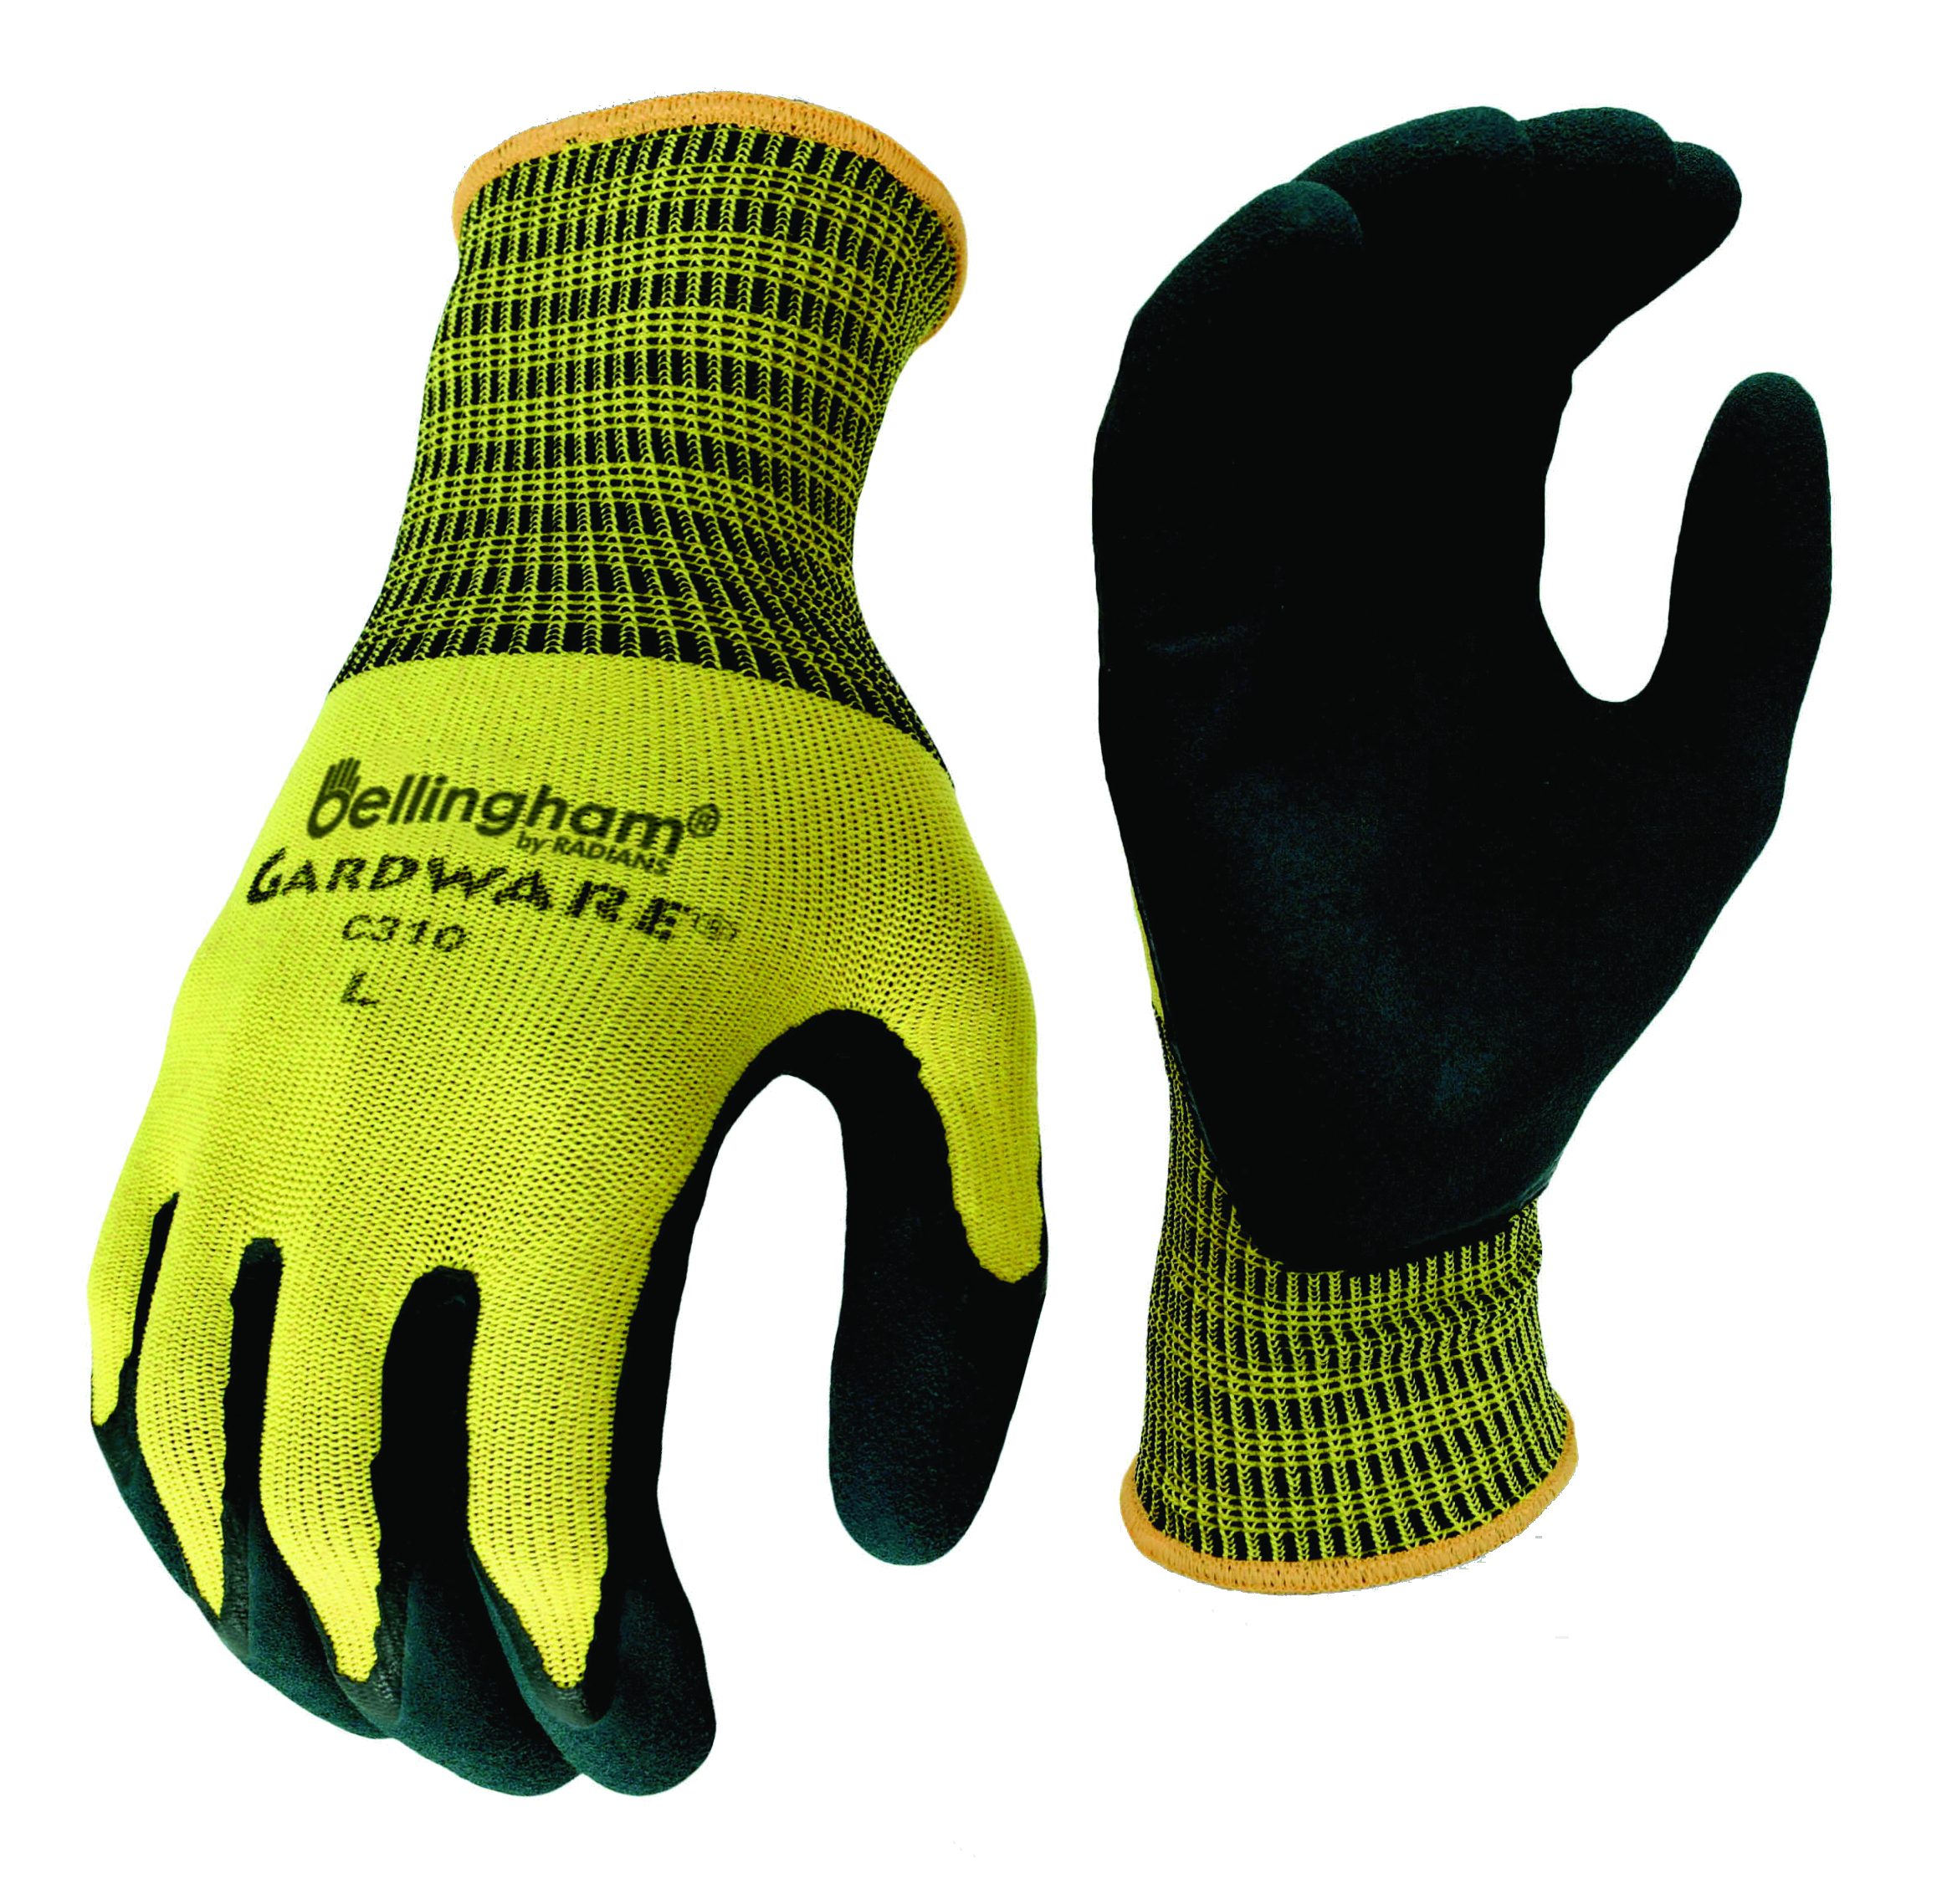 Bellingham C310 Gard Ware Glove